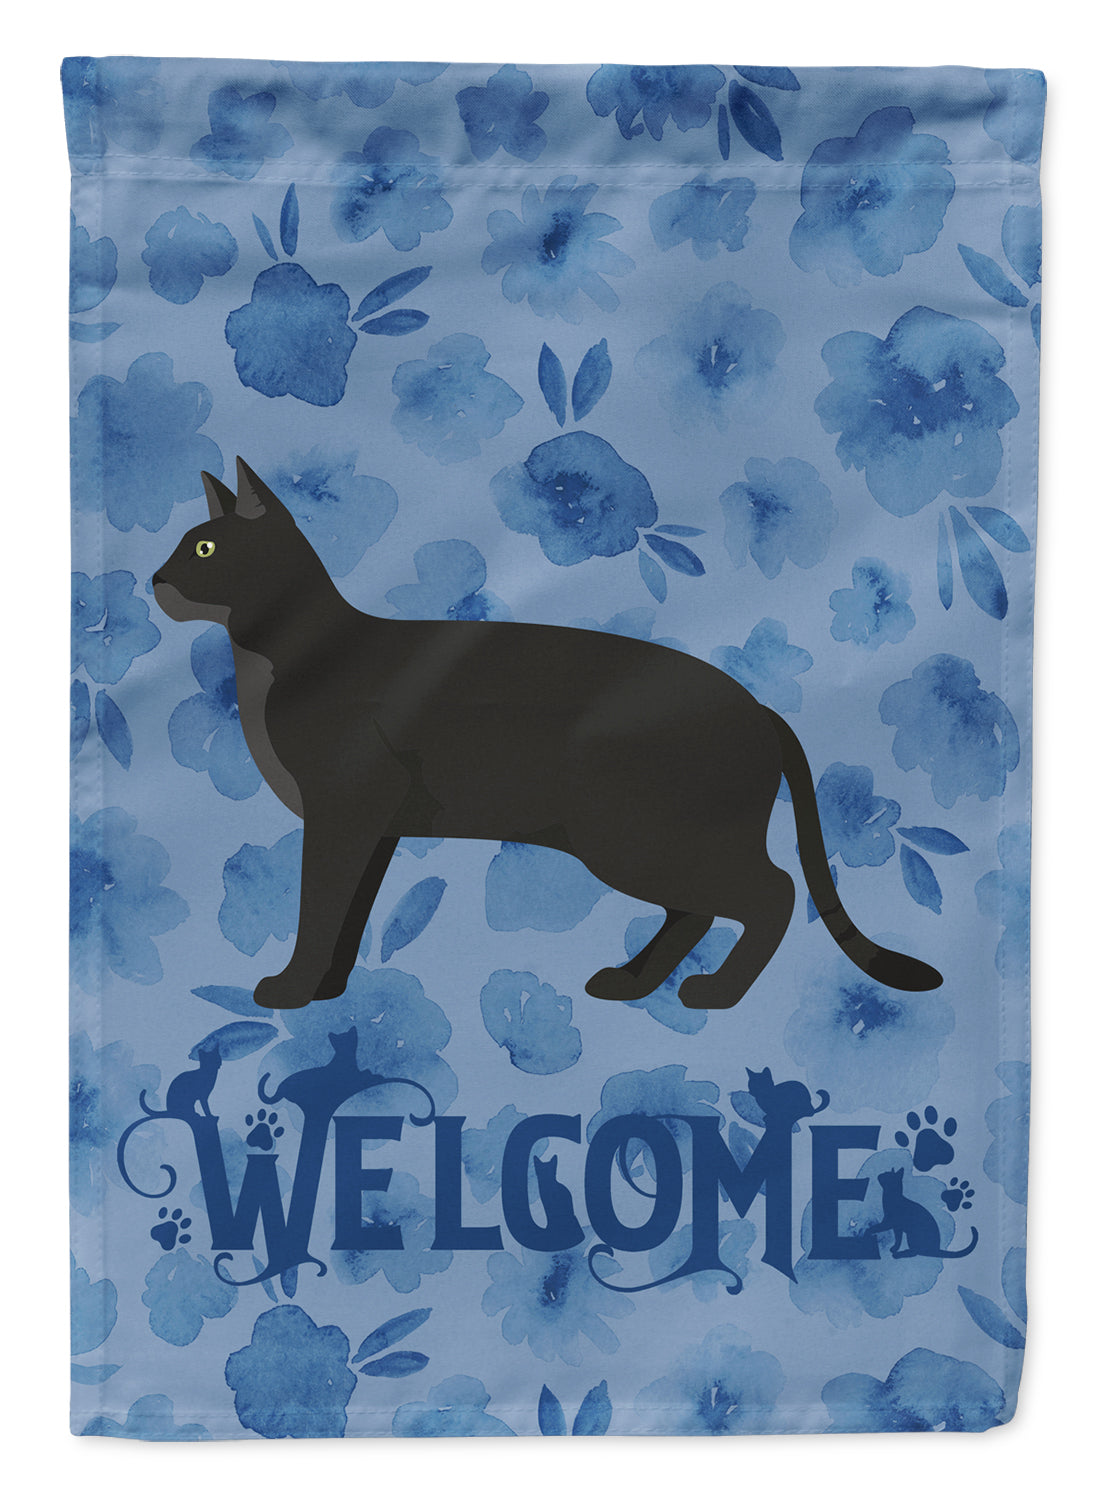 Chausie Black Cat Welcome Flag Garden Size CK4851GF